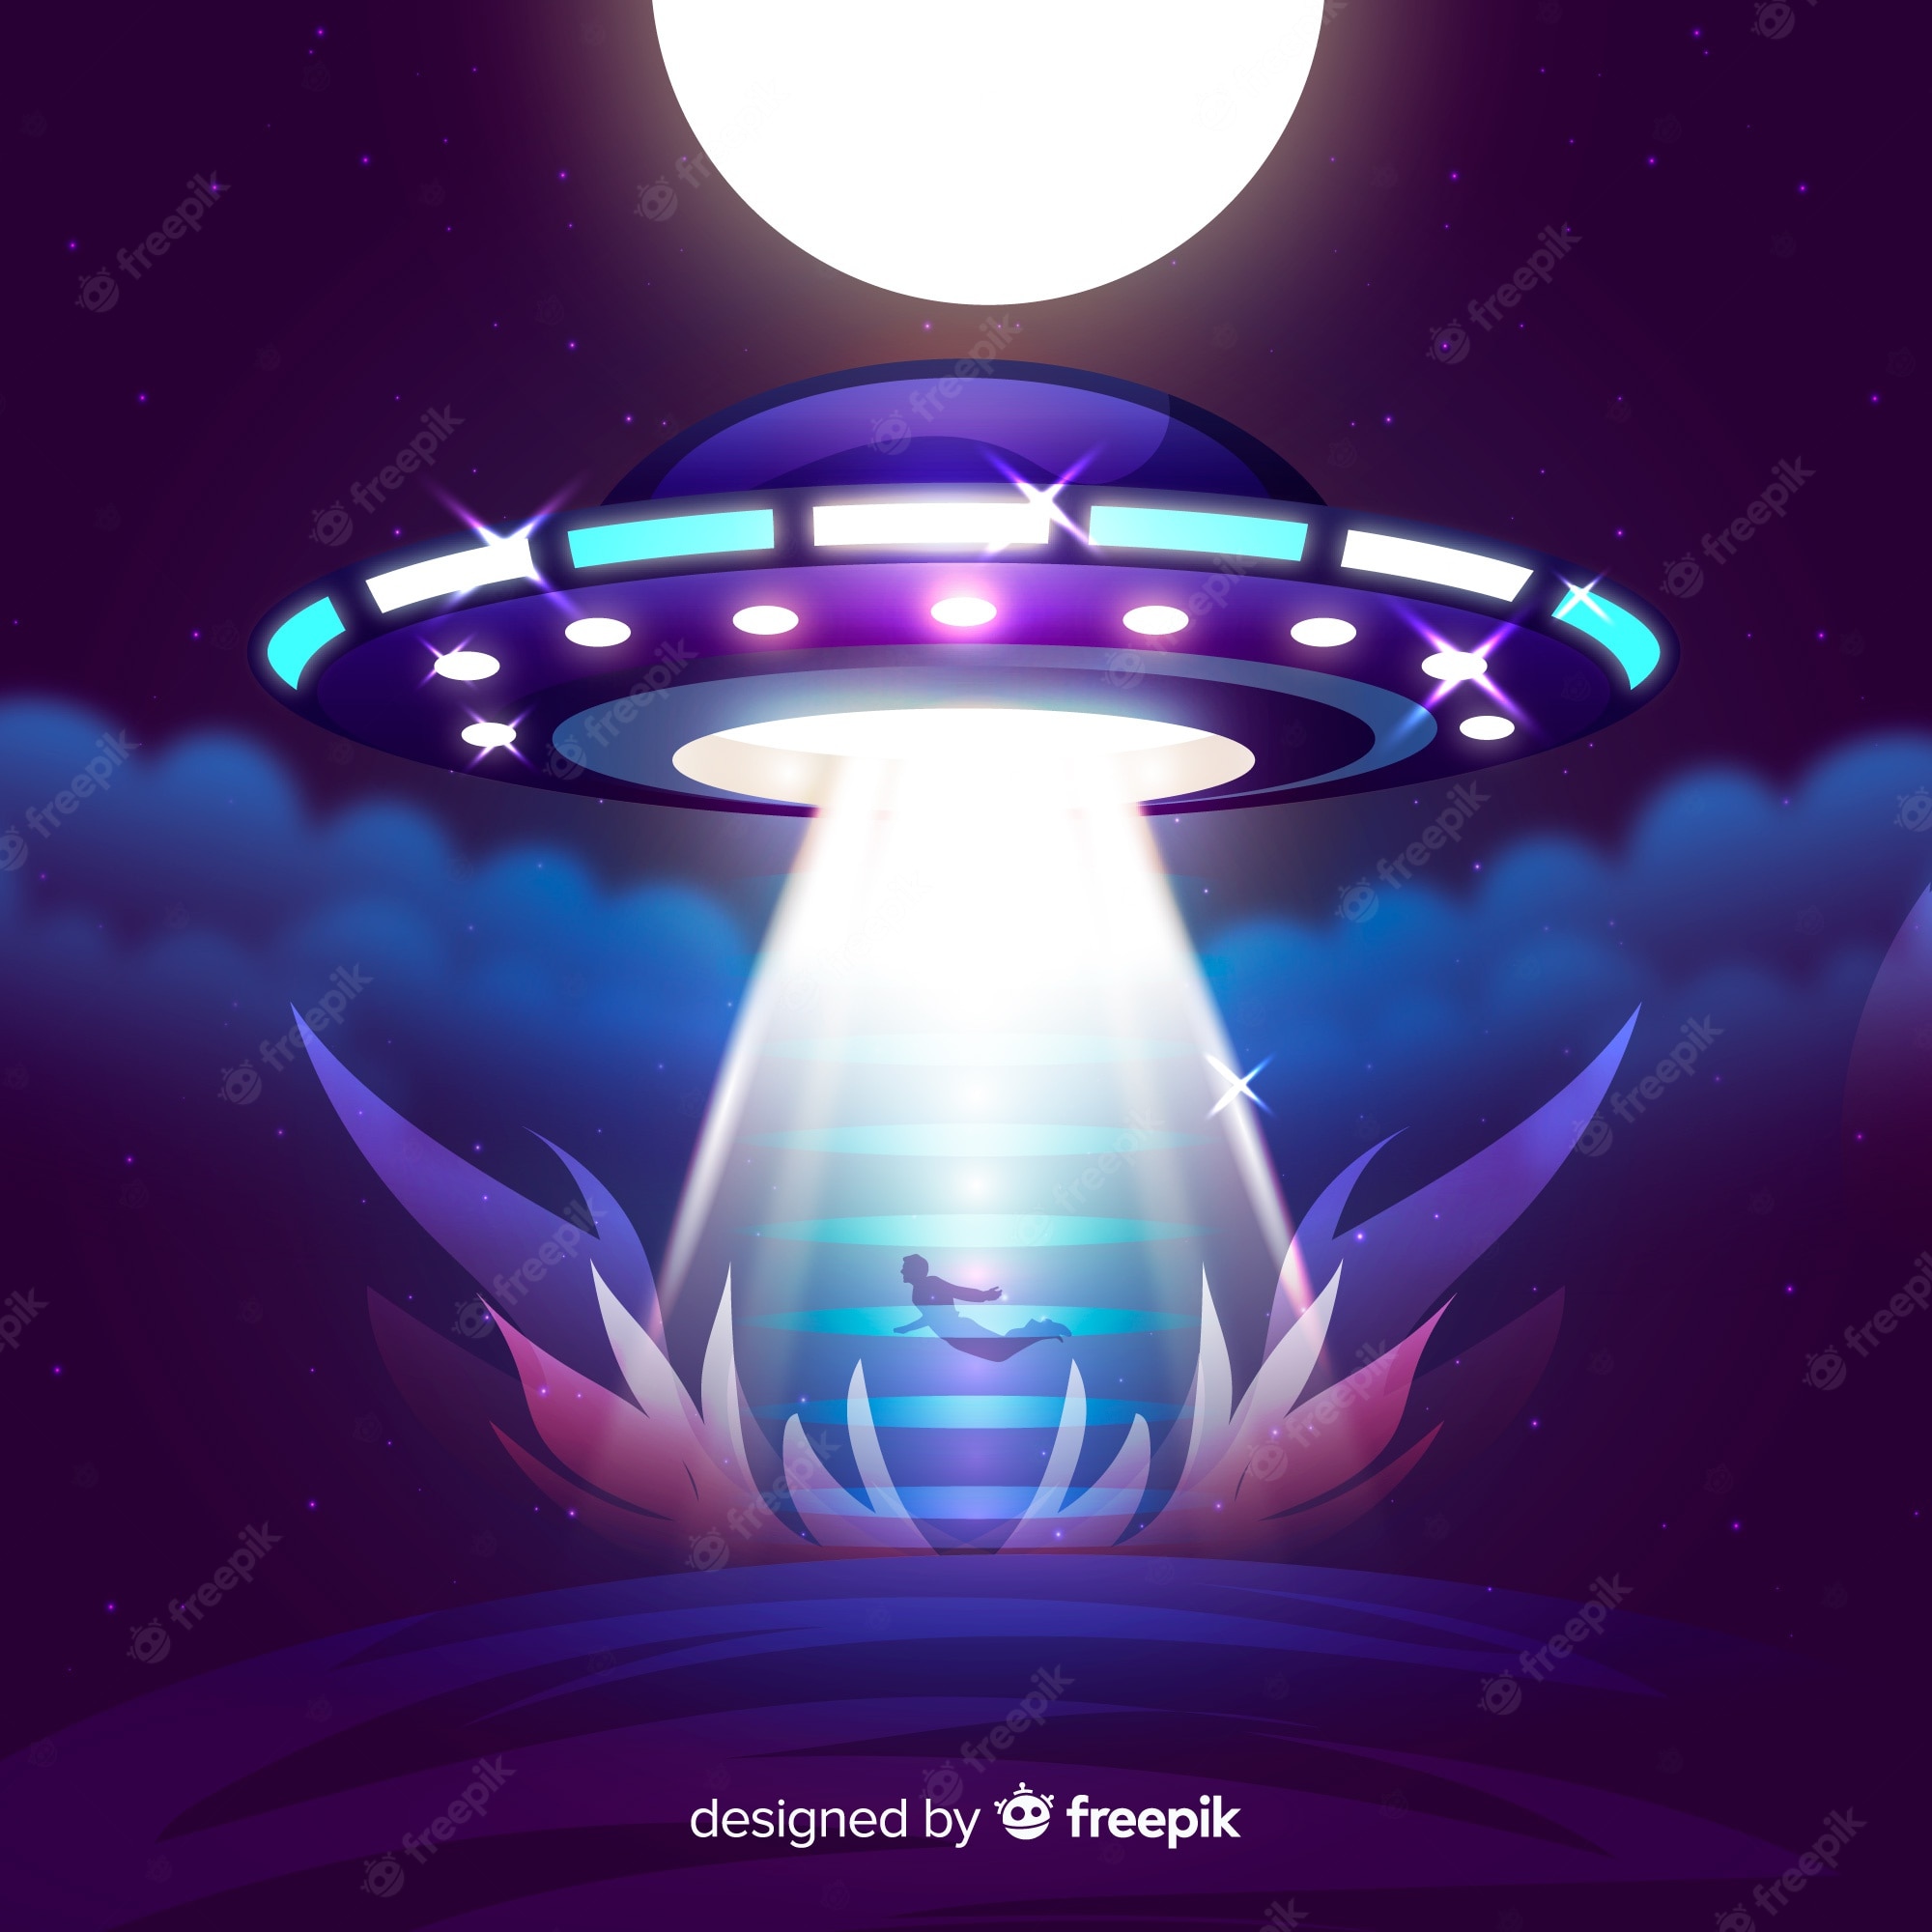 Ufo background images